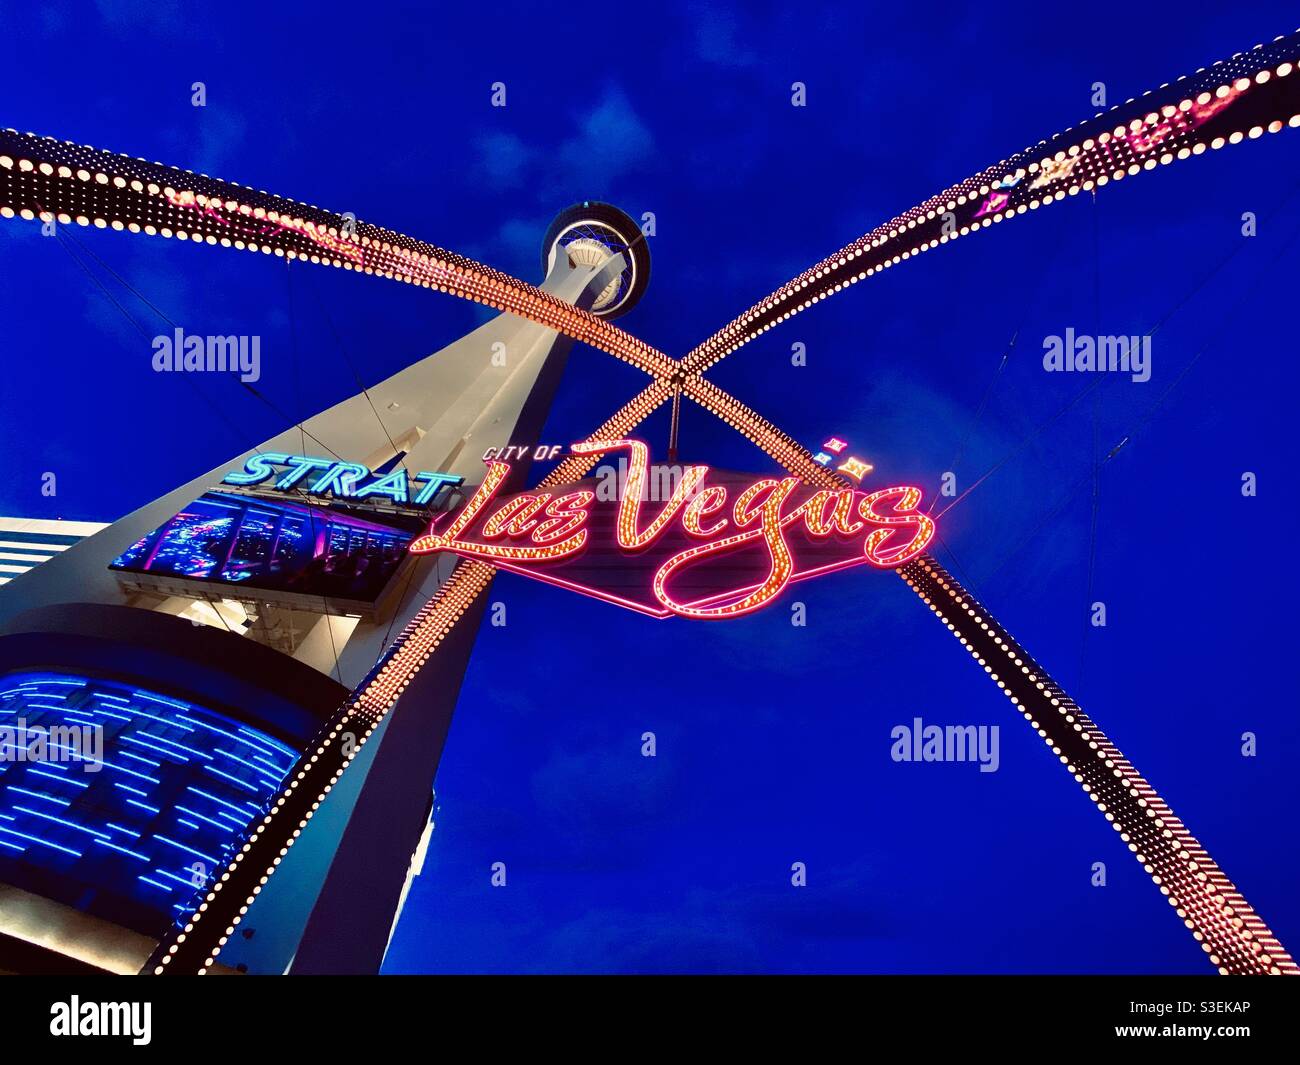 Acogedor cartel/arco con la icónica torre de la Stratosphere en Las Vegas, Nevada Foto de stock